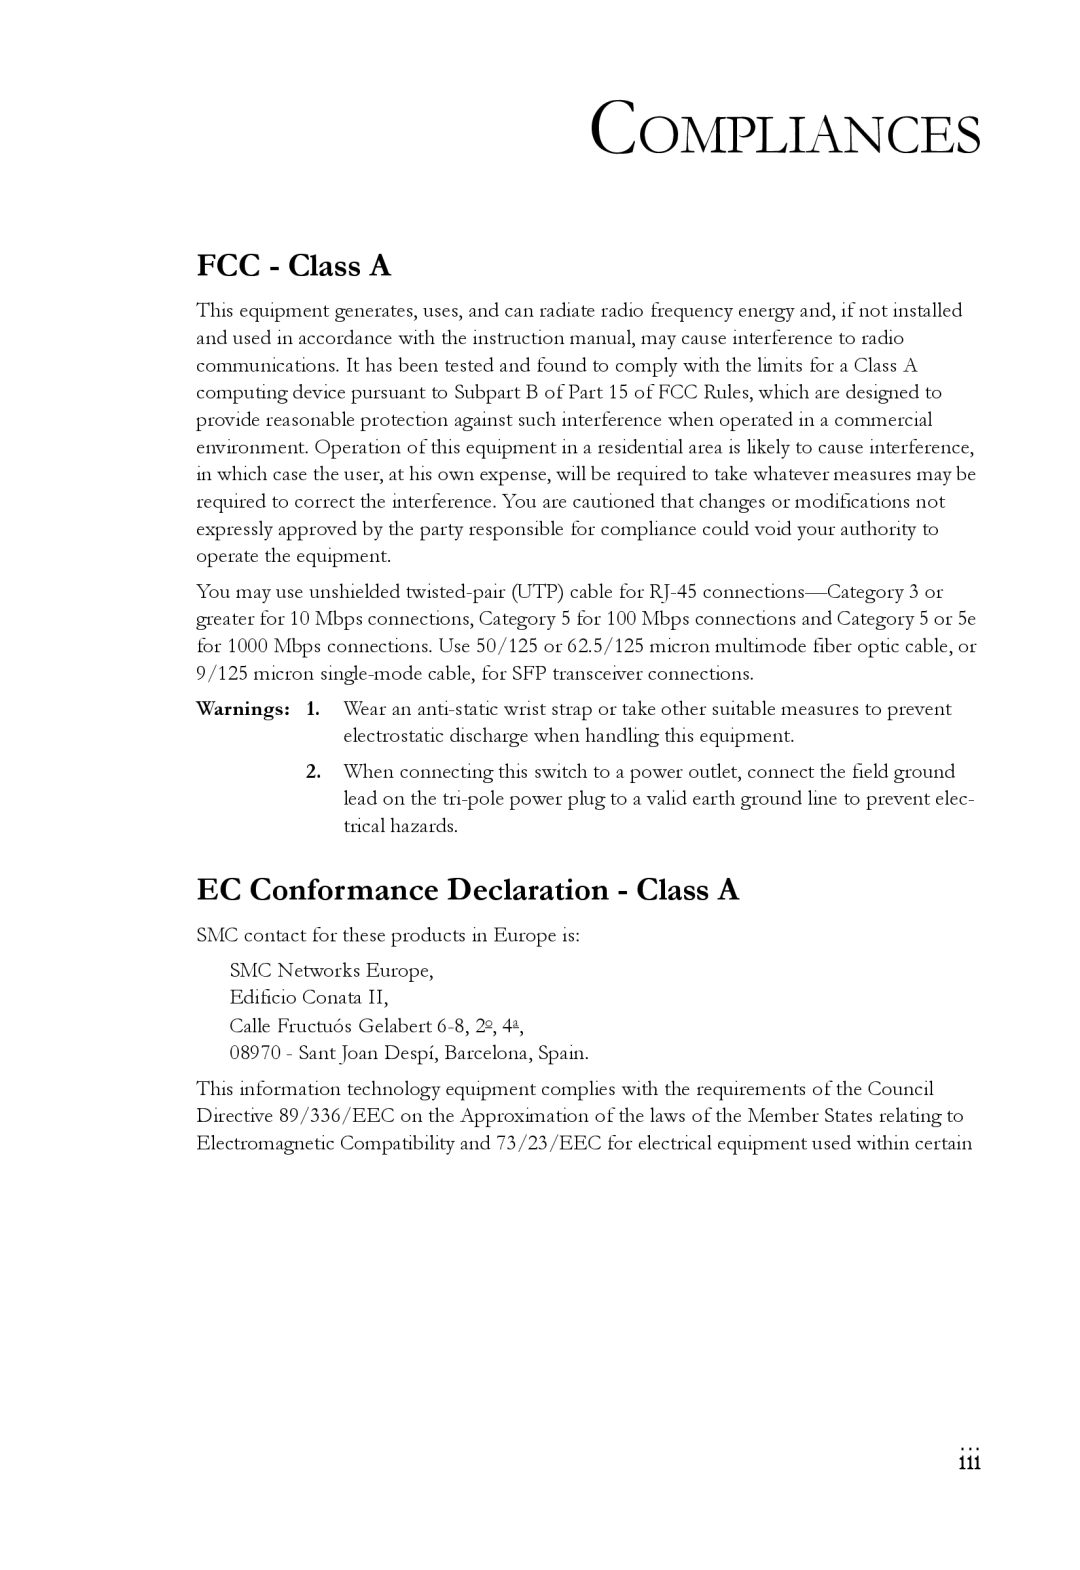 SMC Networks SMC8624T manual Compliances, FCC - Class A, EC Conformance Declaration - Class A 